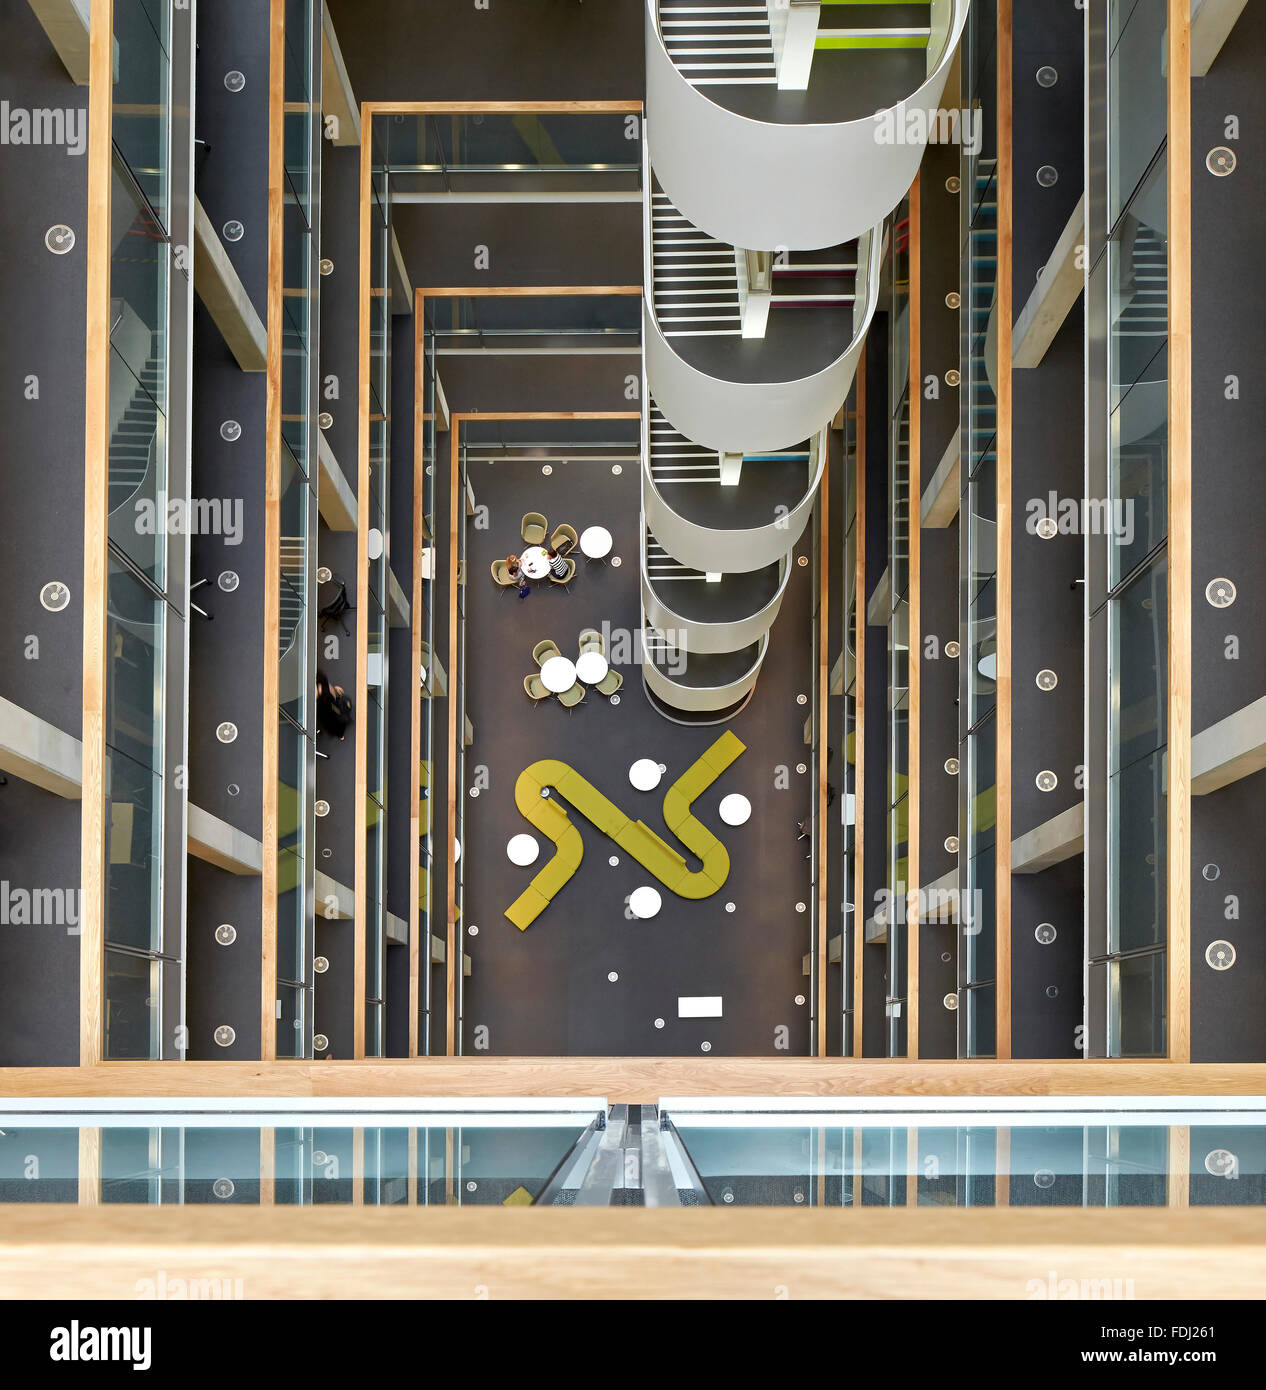 Vogelperspektive in mehrstöckigen Foyer. 5 Pancras Square, London, Vereinigtes Königreich. Architekt: Bennetts Associates Architects, 20 Stockfoto